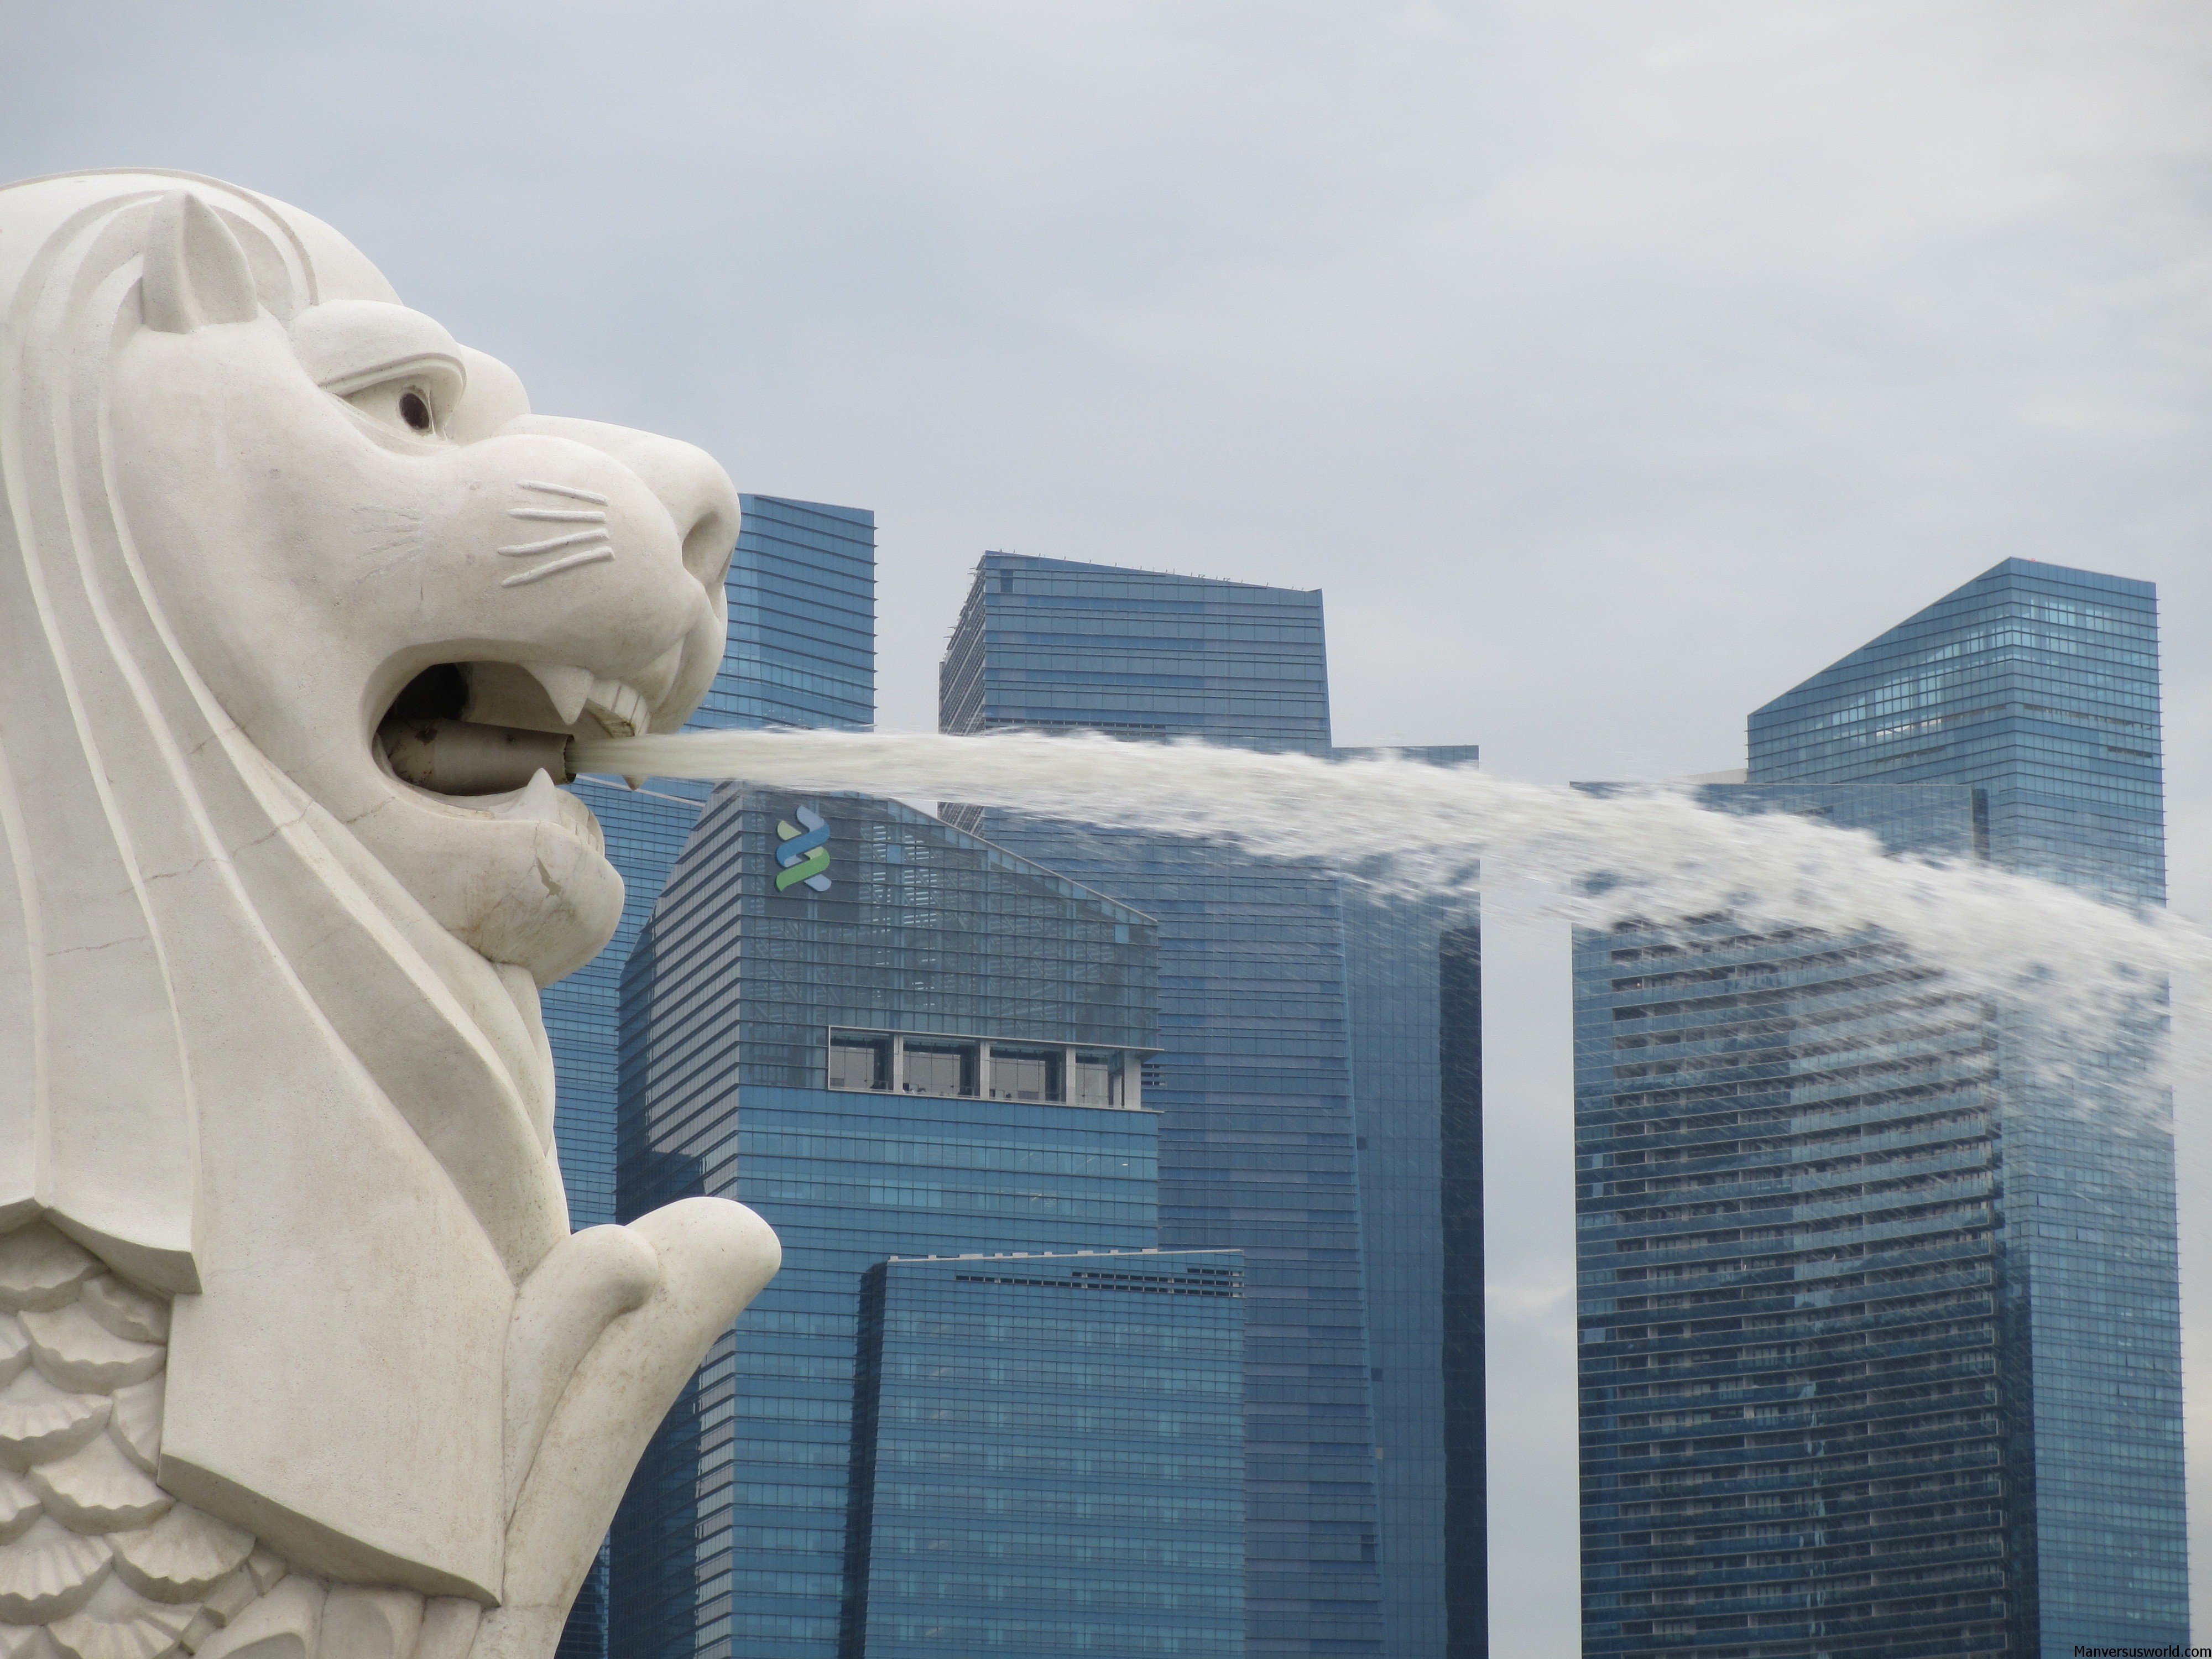 Singapore's iconic emblem, the merlion